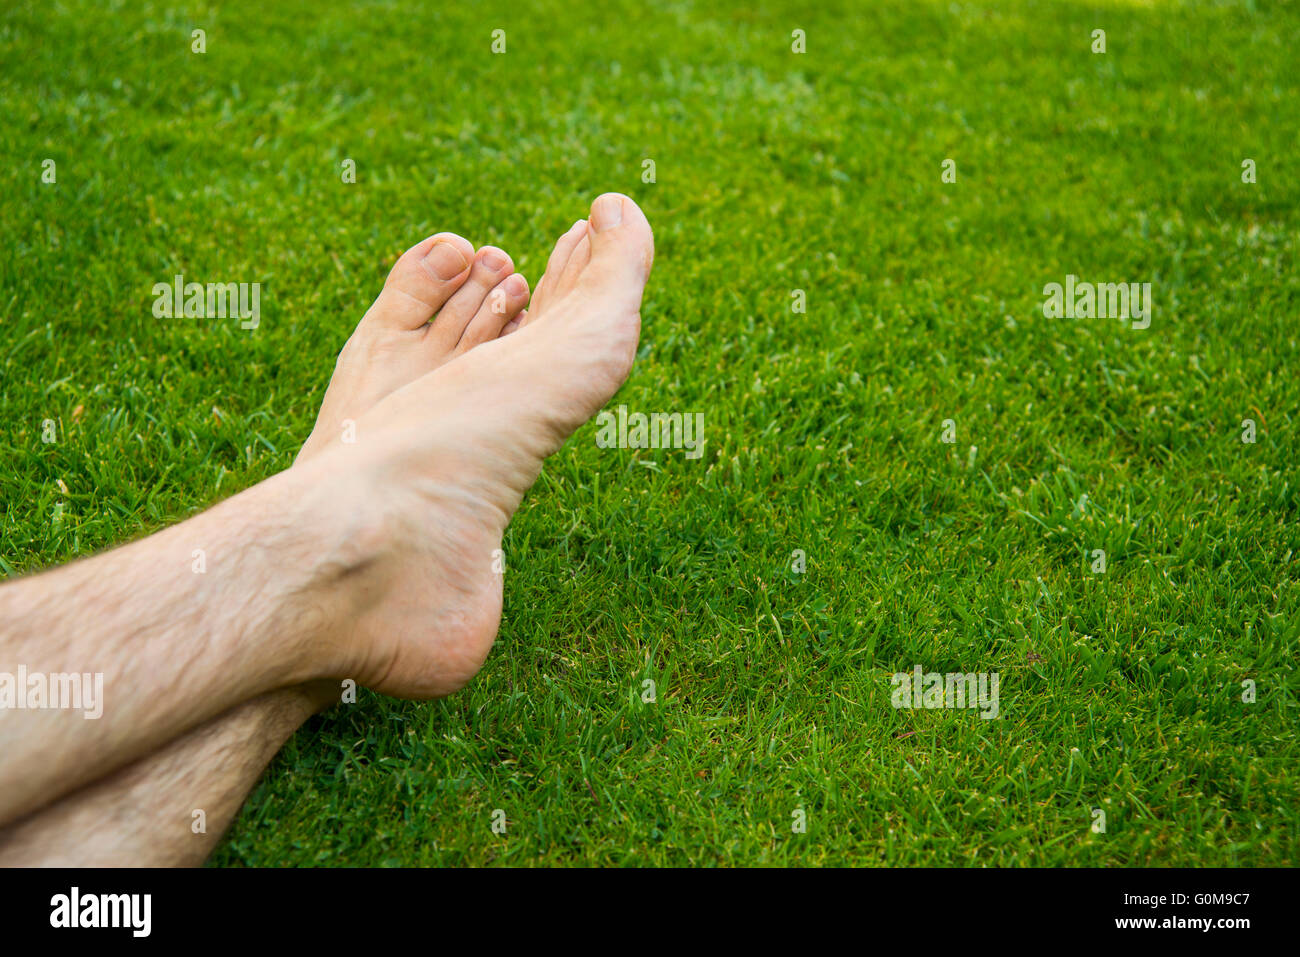 Los pies del hombre descansando sobre la hierba. Foto de stock